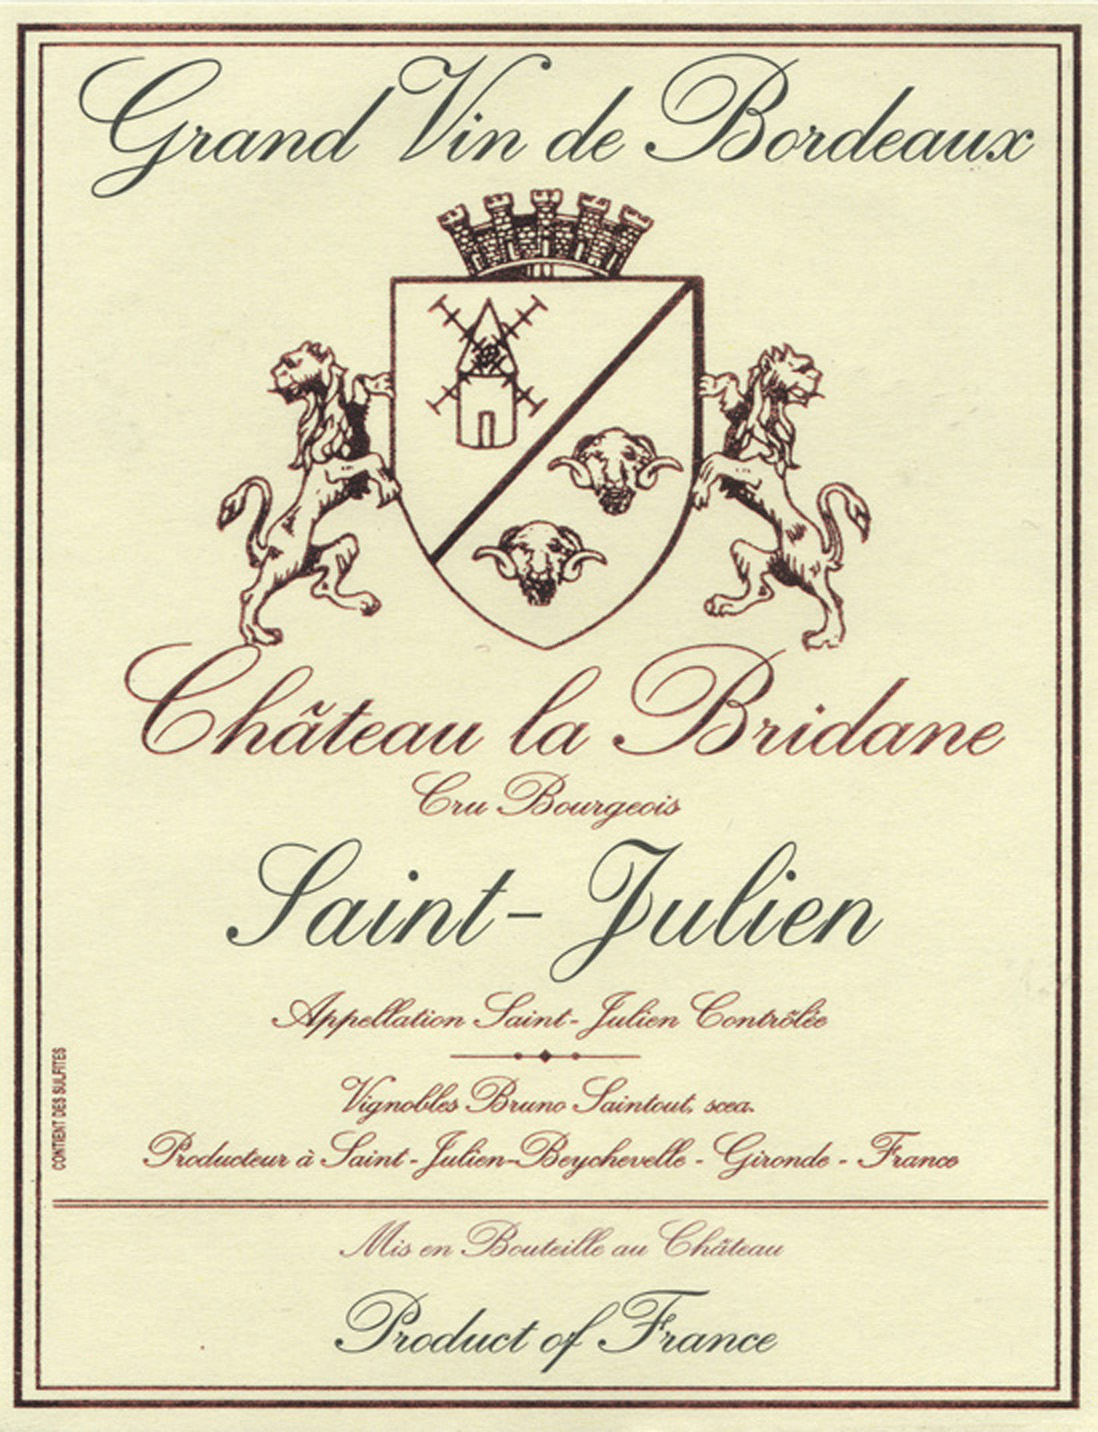 Chateau La Bridane label